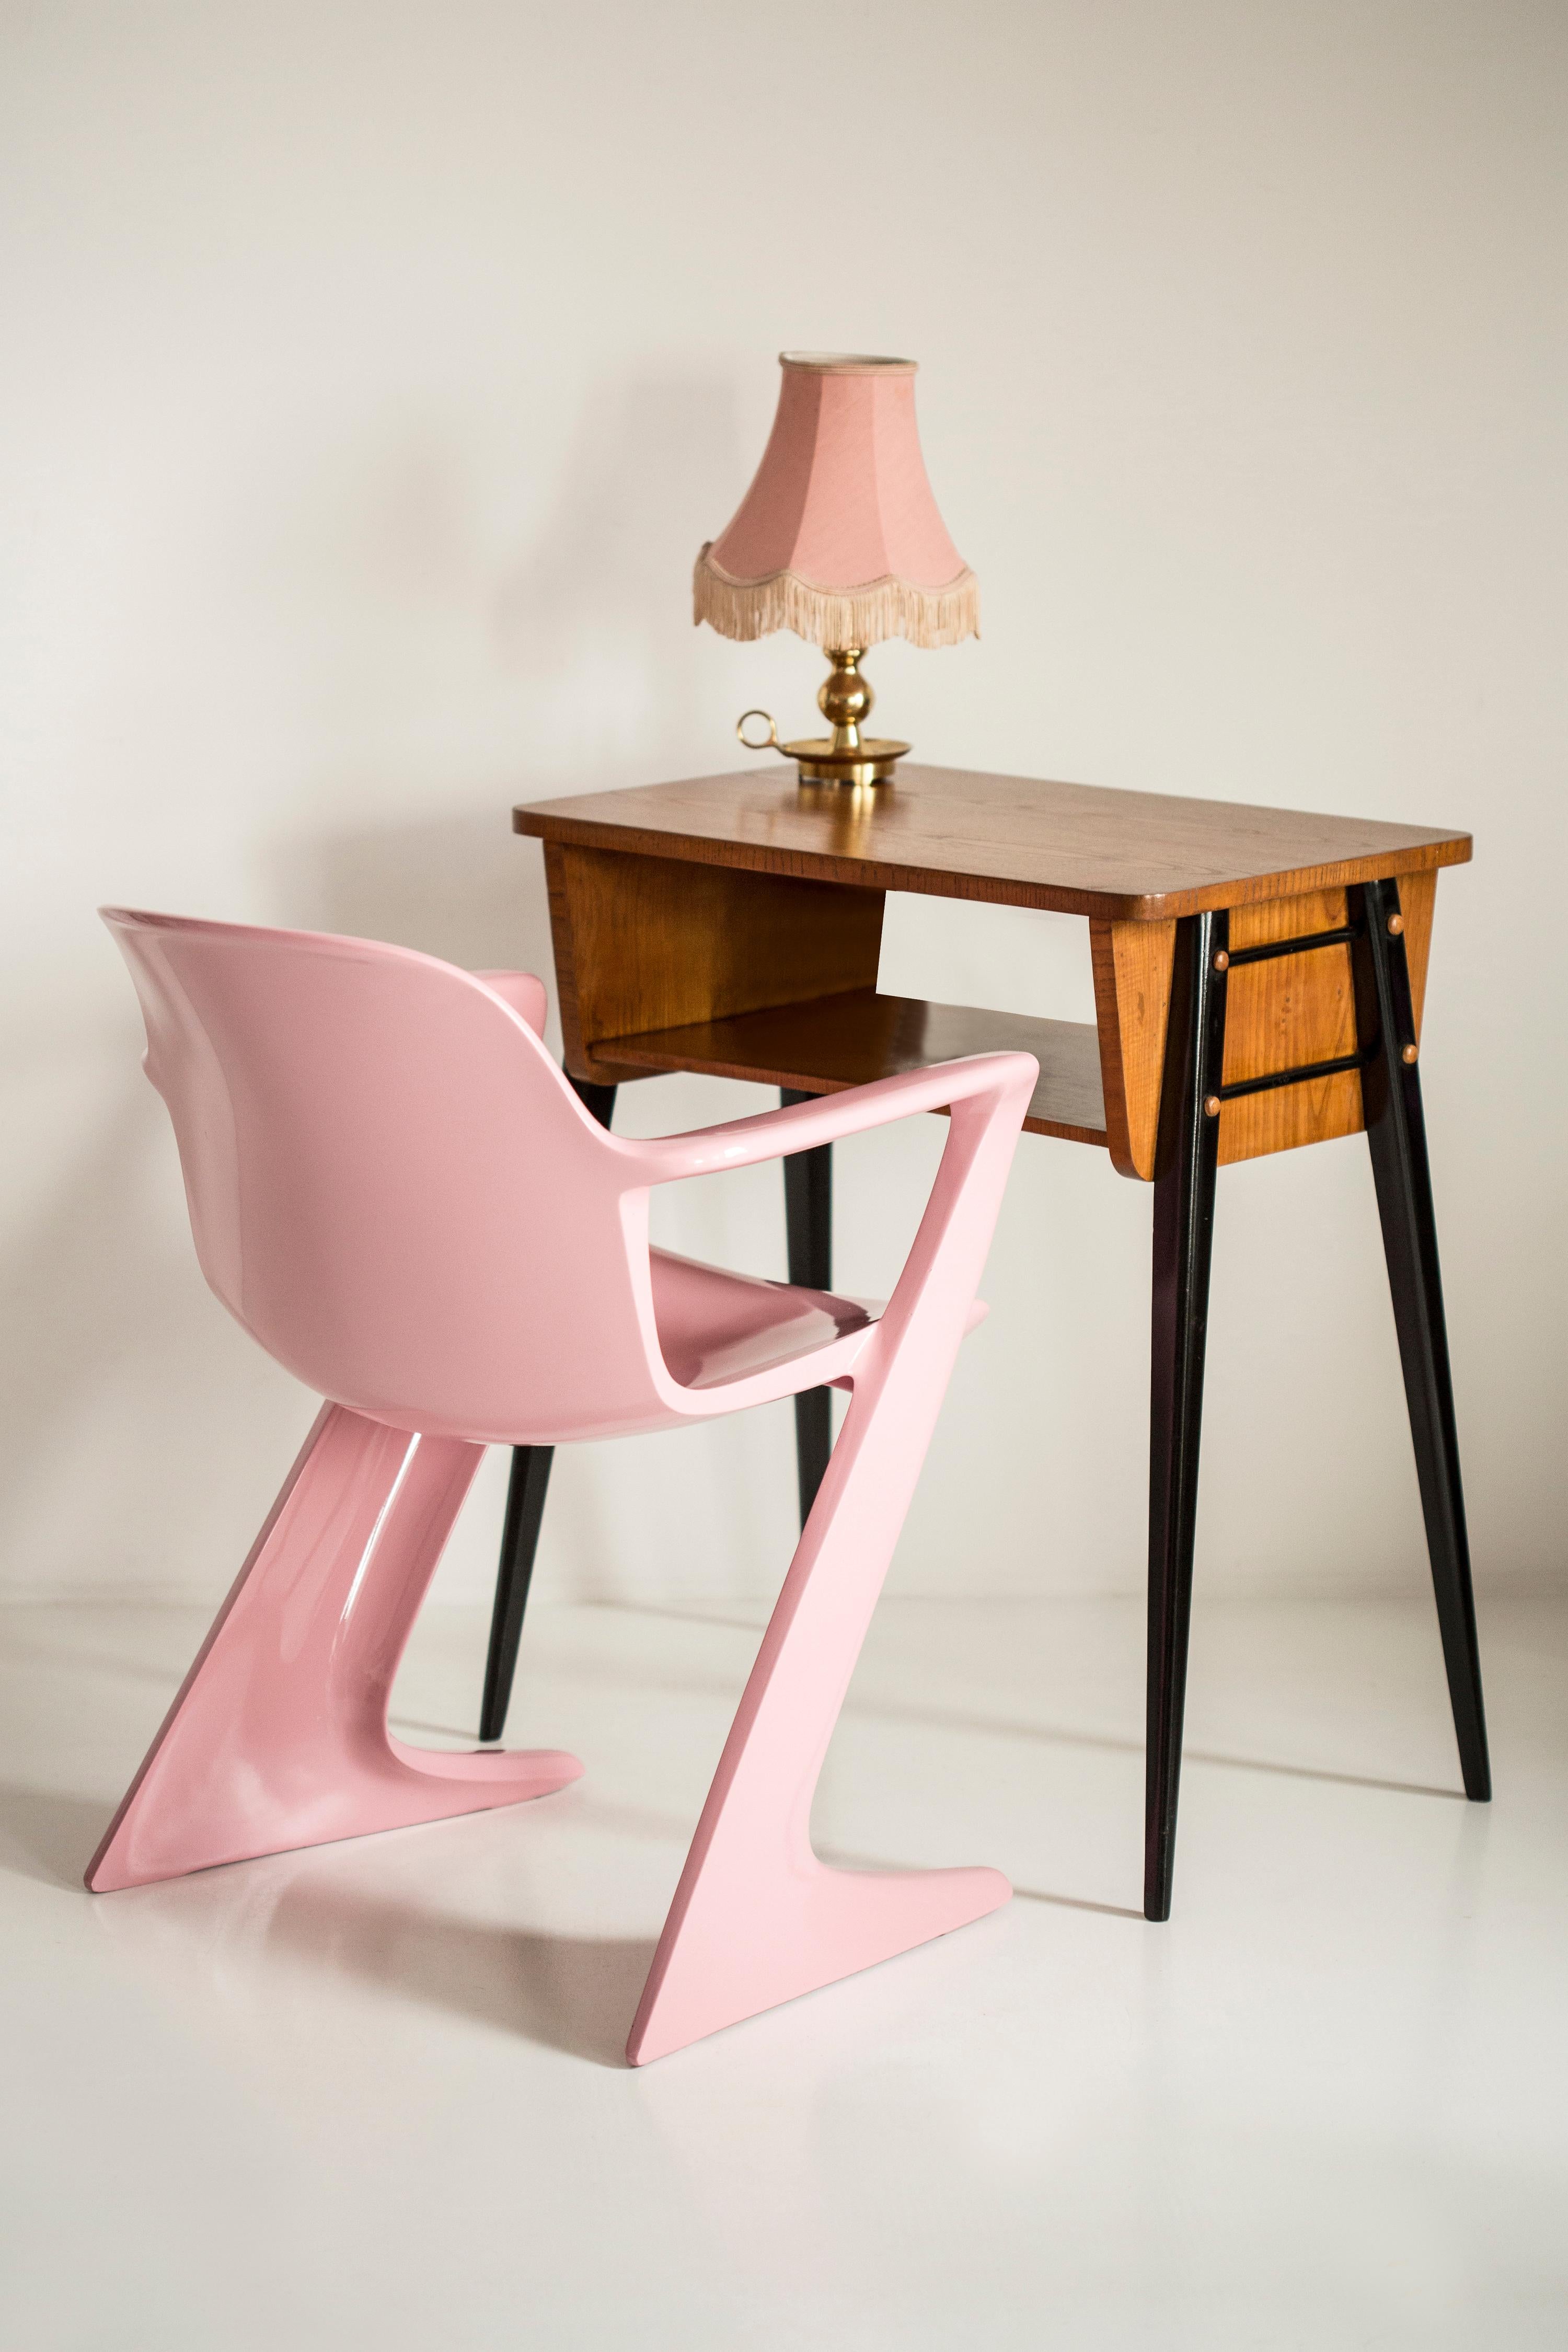 Dieses Modell wird als Z-Stuhl bezeichnet. 1968 in der DDR von Ernst Moeckl und Siegfried Mehl entworfen, deutsche Version des Panton-Stuhls. Auch Känguru-Stuhl oder Variopur-Stuhl genannt. Produziert in Ostdeutschland.

Die Stühle sind renoviert